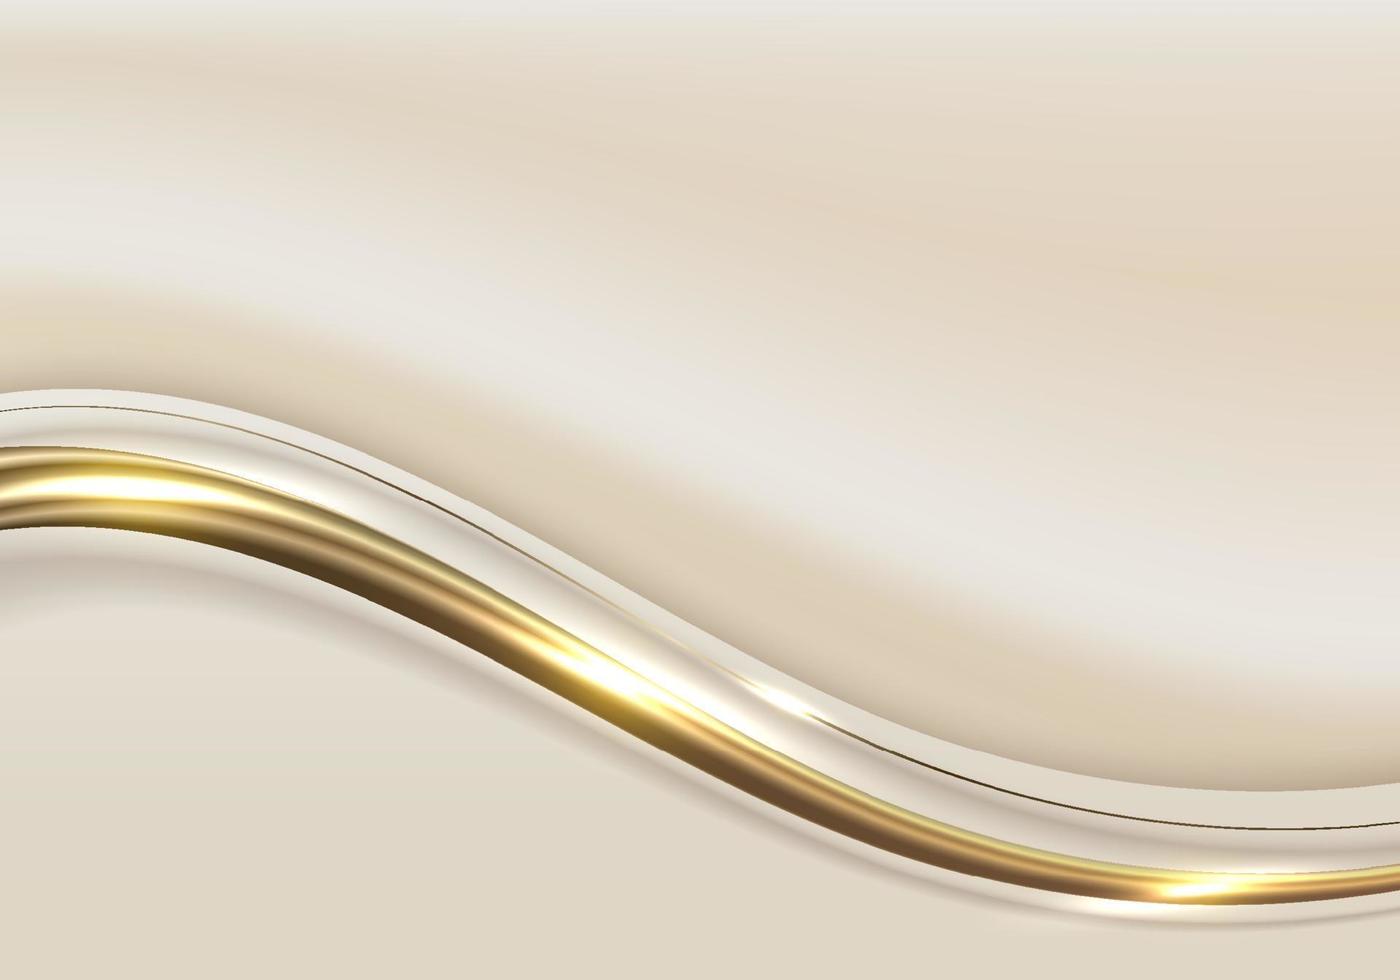 forme abstraite élégante de vague blanche et brune avec des lignes courbes dorées 3d arrondies et des étincelles légères sur fond propre vecteur